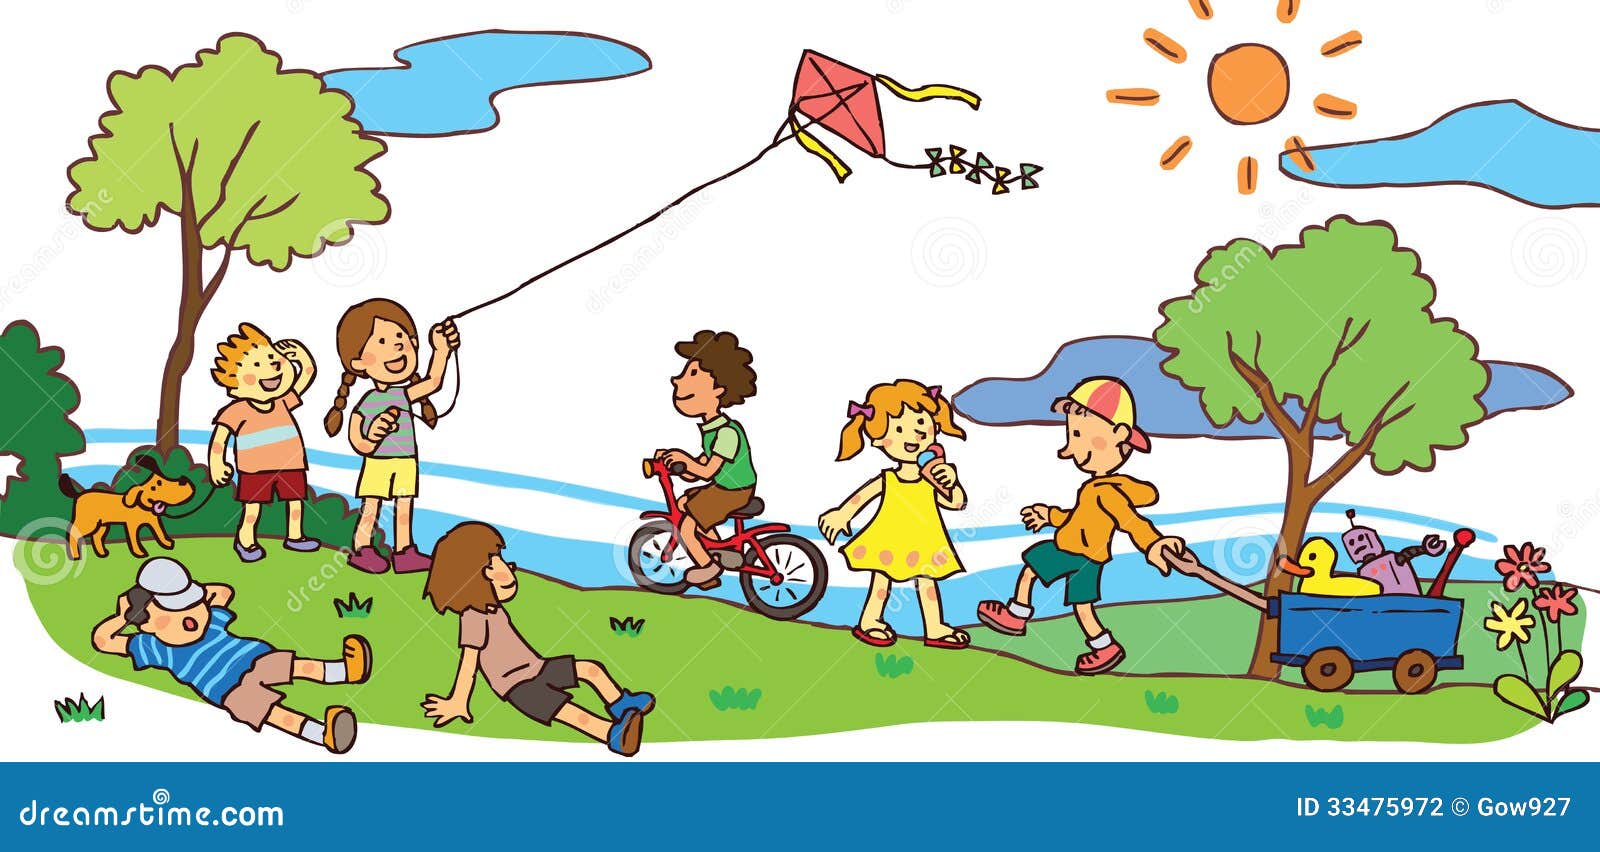 Have a great game. Малыши на прогулке летом иллюстрация. Дети в парке рисунок. Картинка для описания парк. Дети играют в парке иллюстрация.